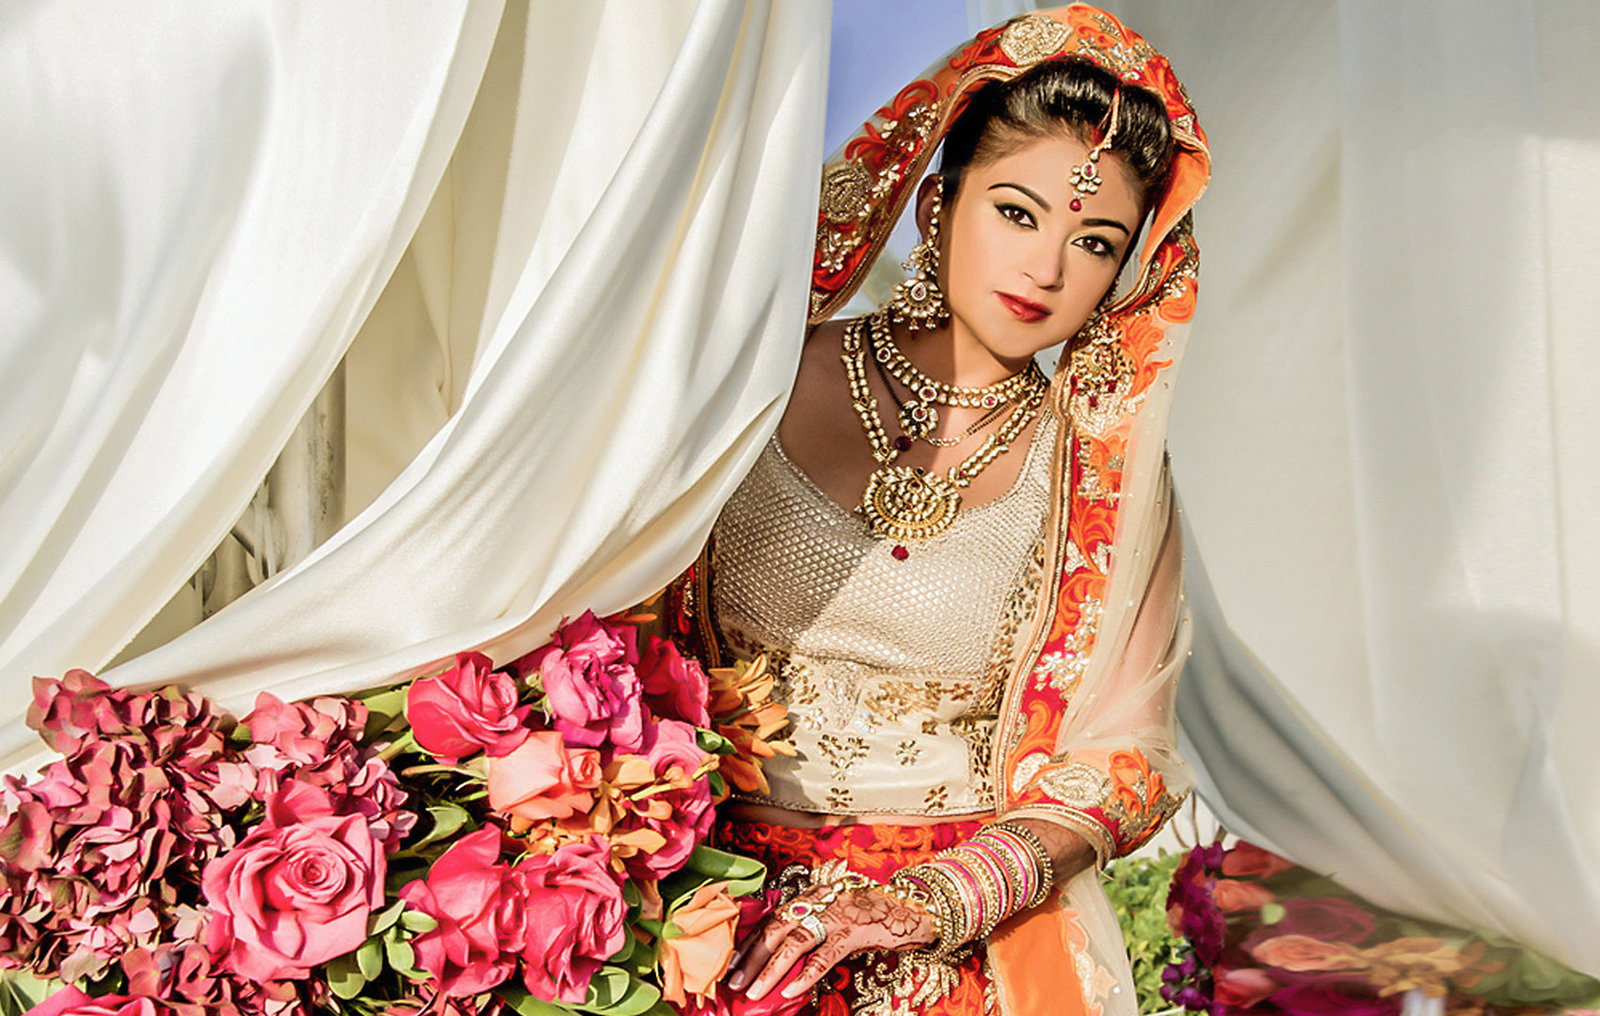 Hawaii Indian wedding photographers  | maui | oahu | kauai | big island